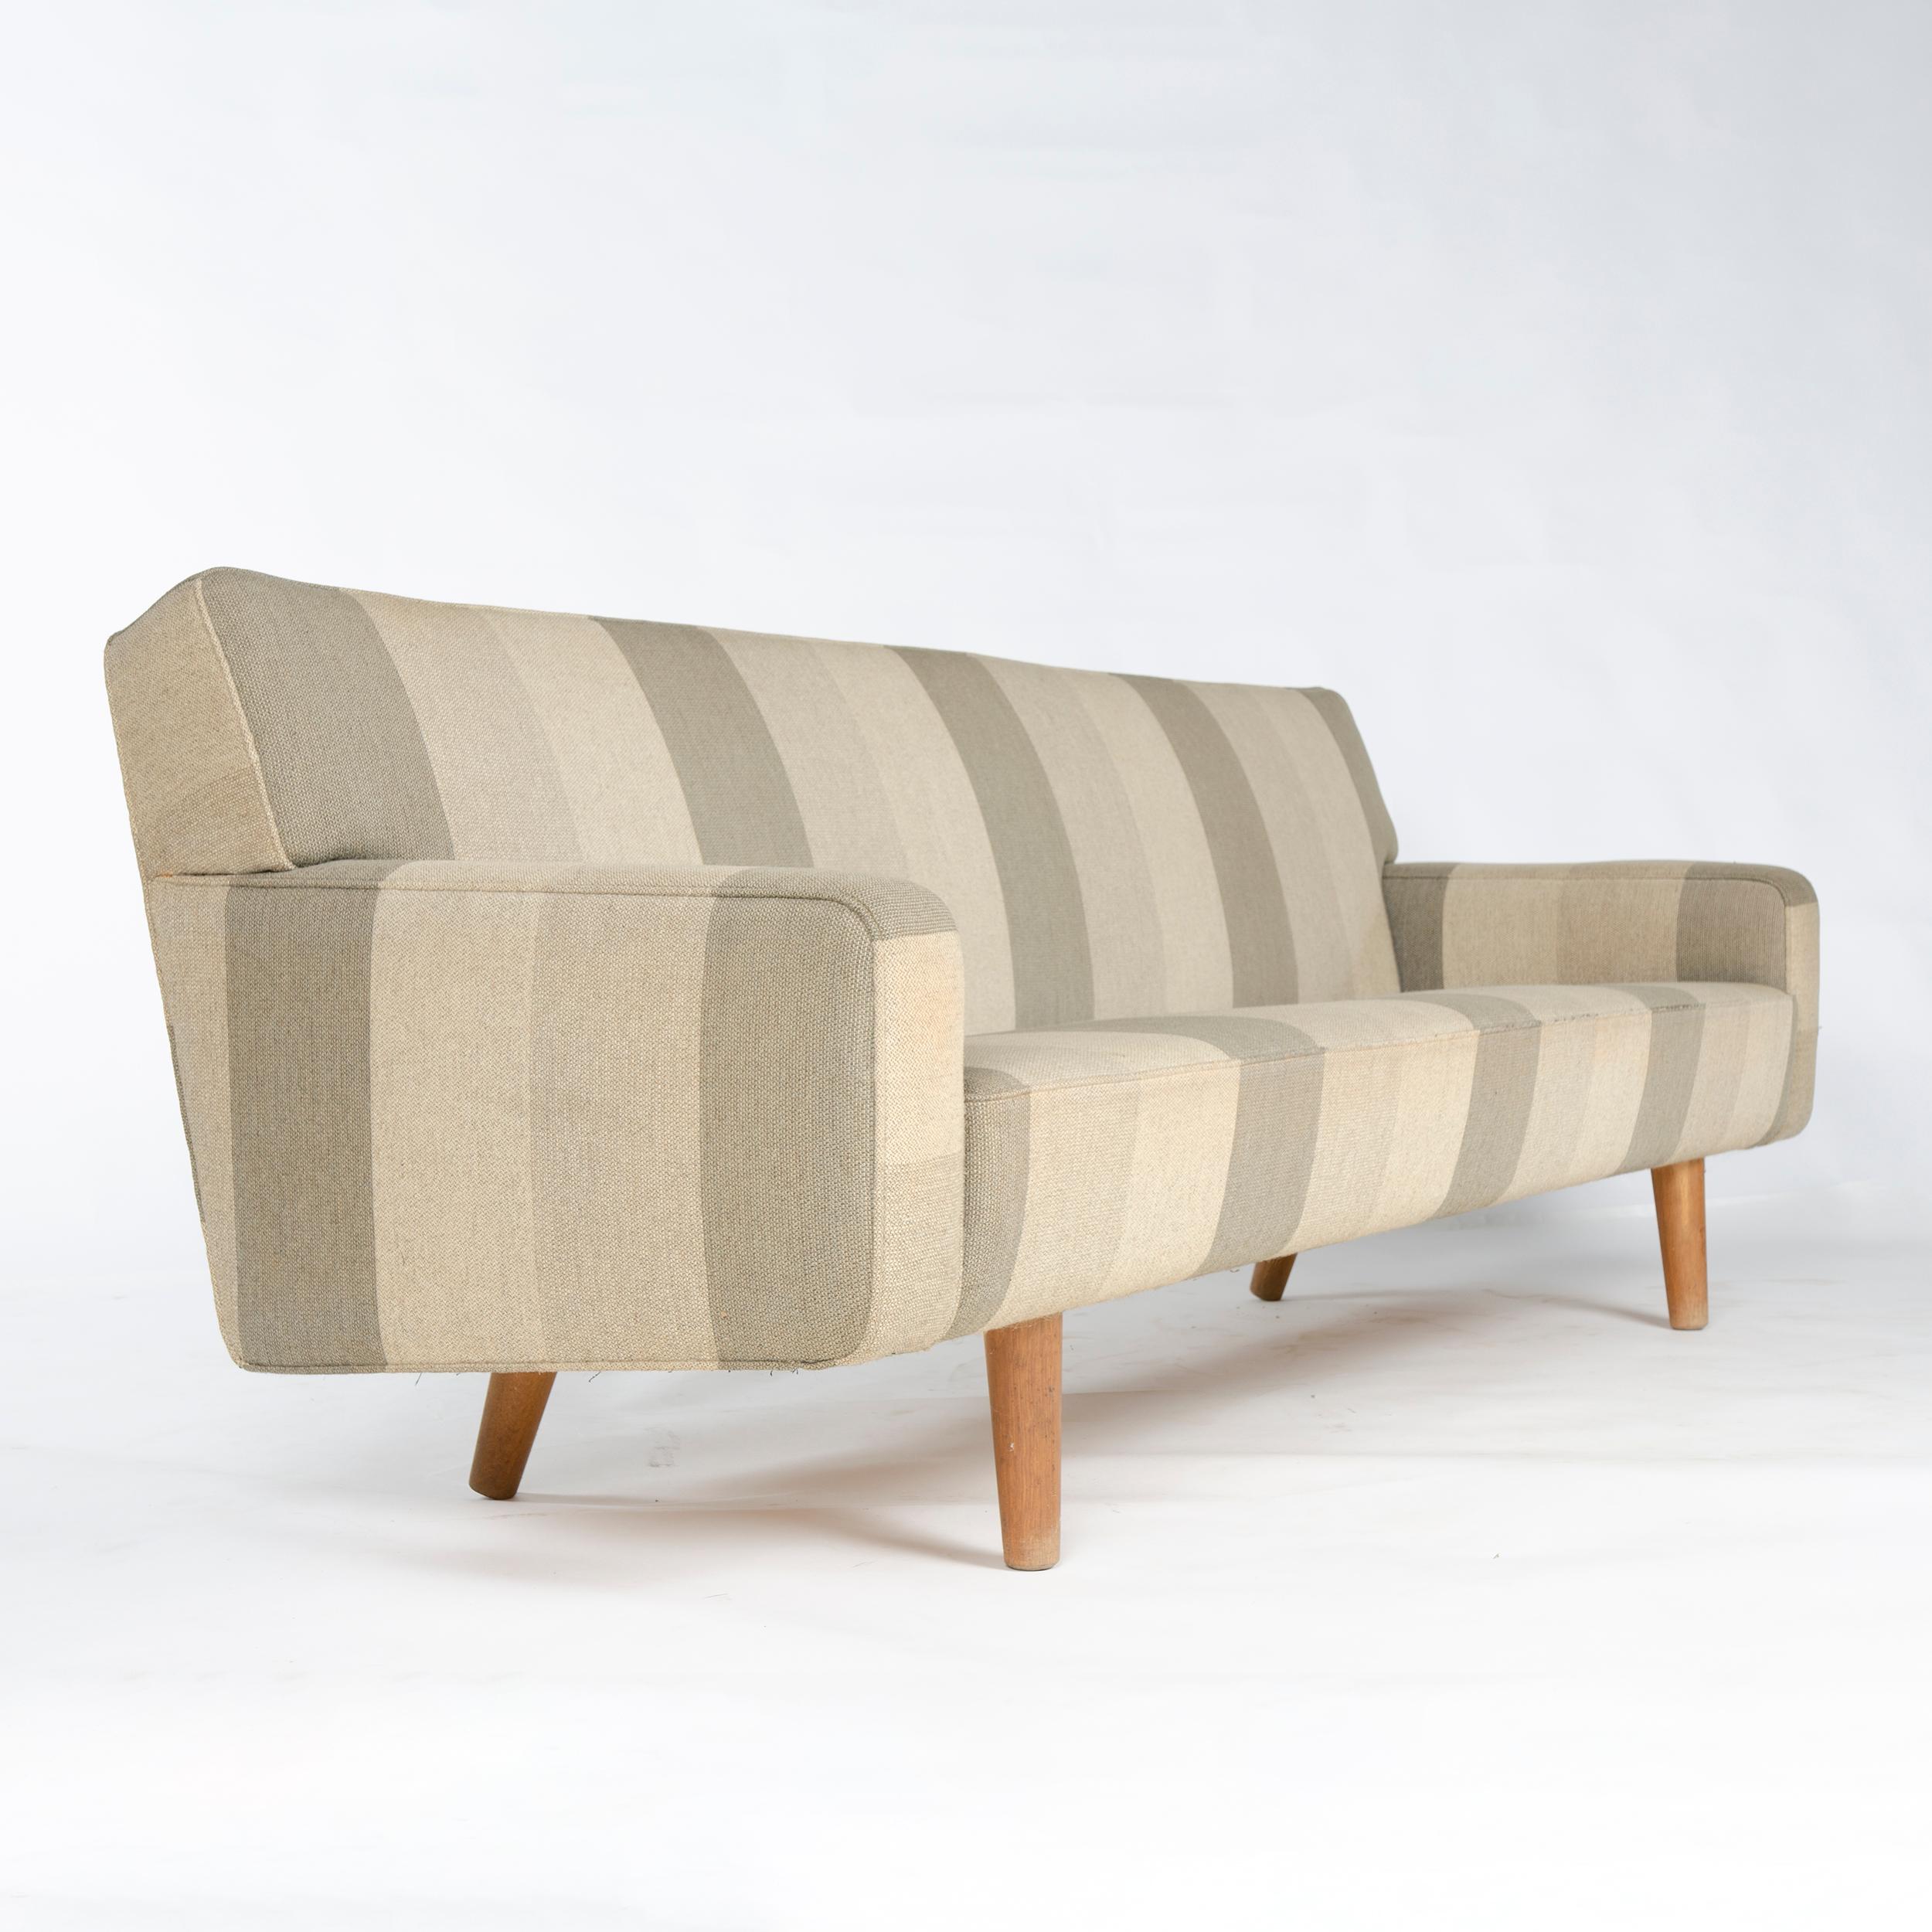 Ein maßgeschneidertes und vollständig gepolstertes Sofa, das auf wohlgeformten, gedrechselten Eichendübelbeinen schwebt. Modell AP32-S von Hans J. Wegner für A.P. Gestohlen in Originalpolsterung.